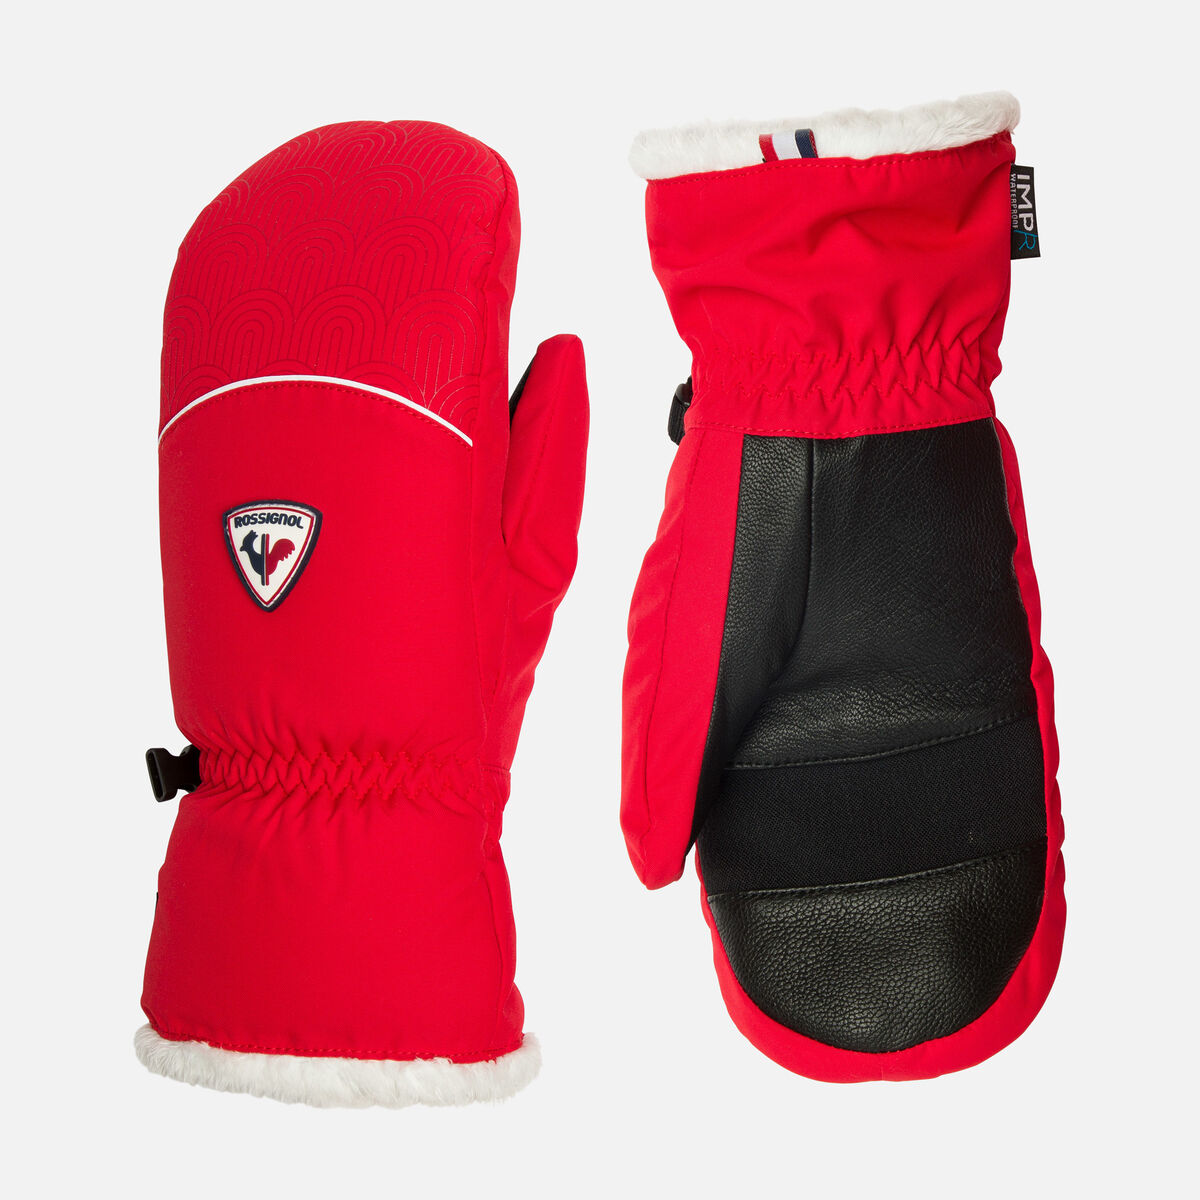 Moufles ou gants fille : achat en ligne - Catalogue DPAM